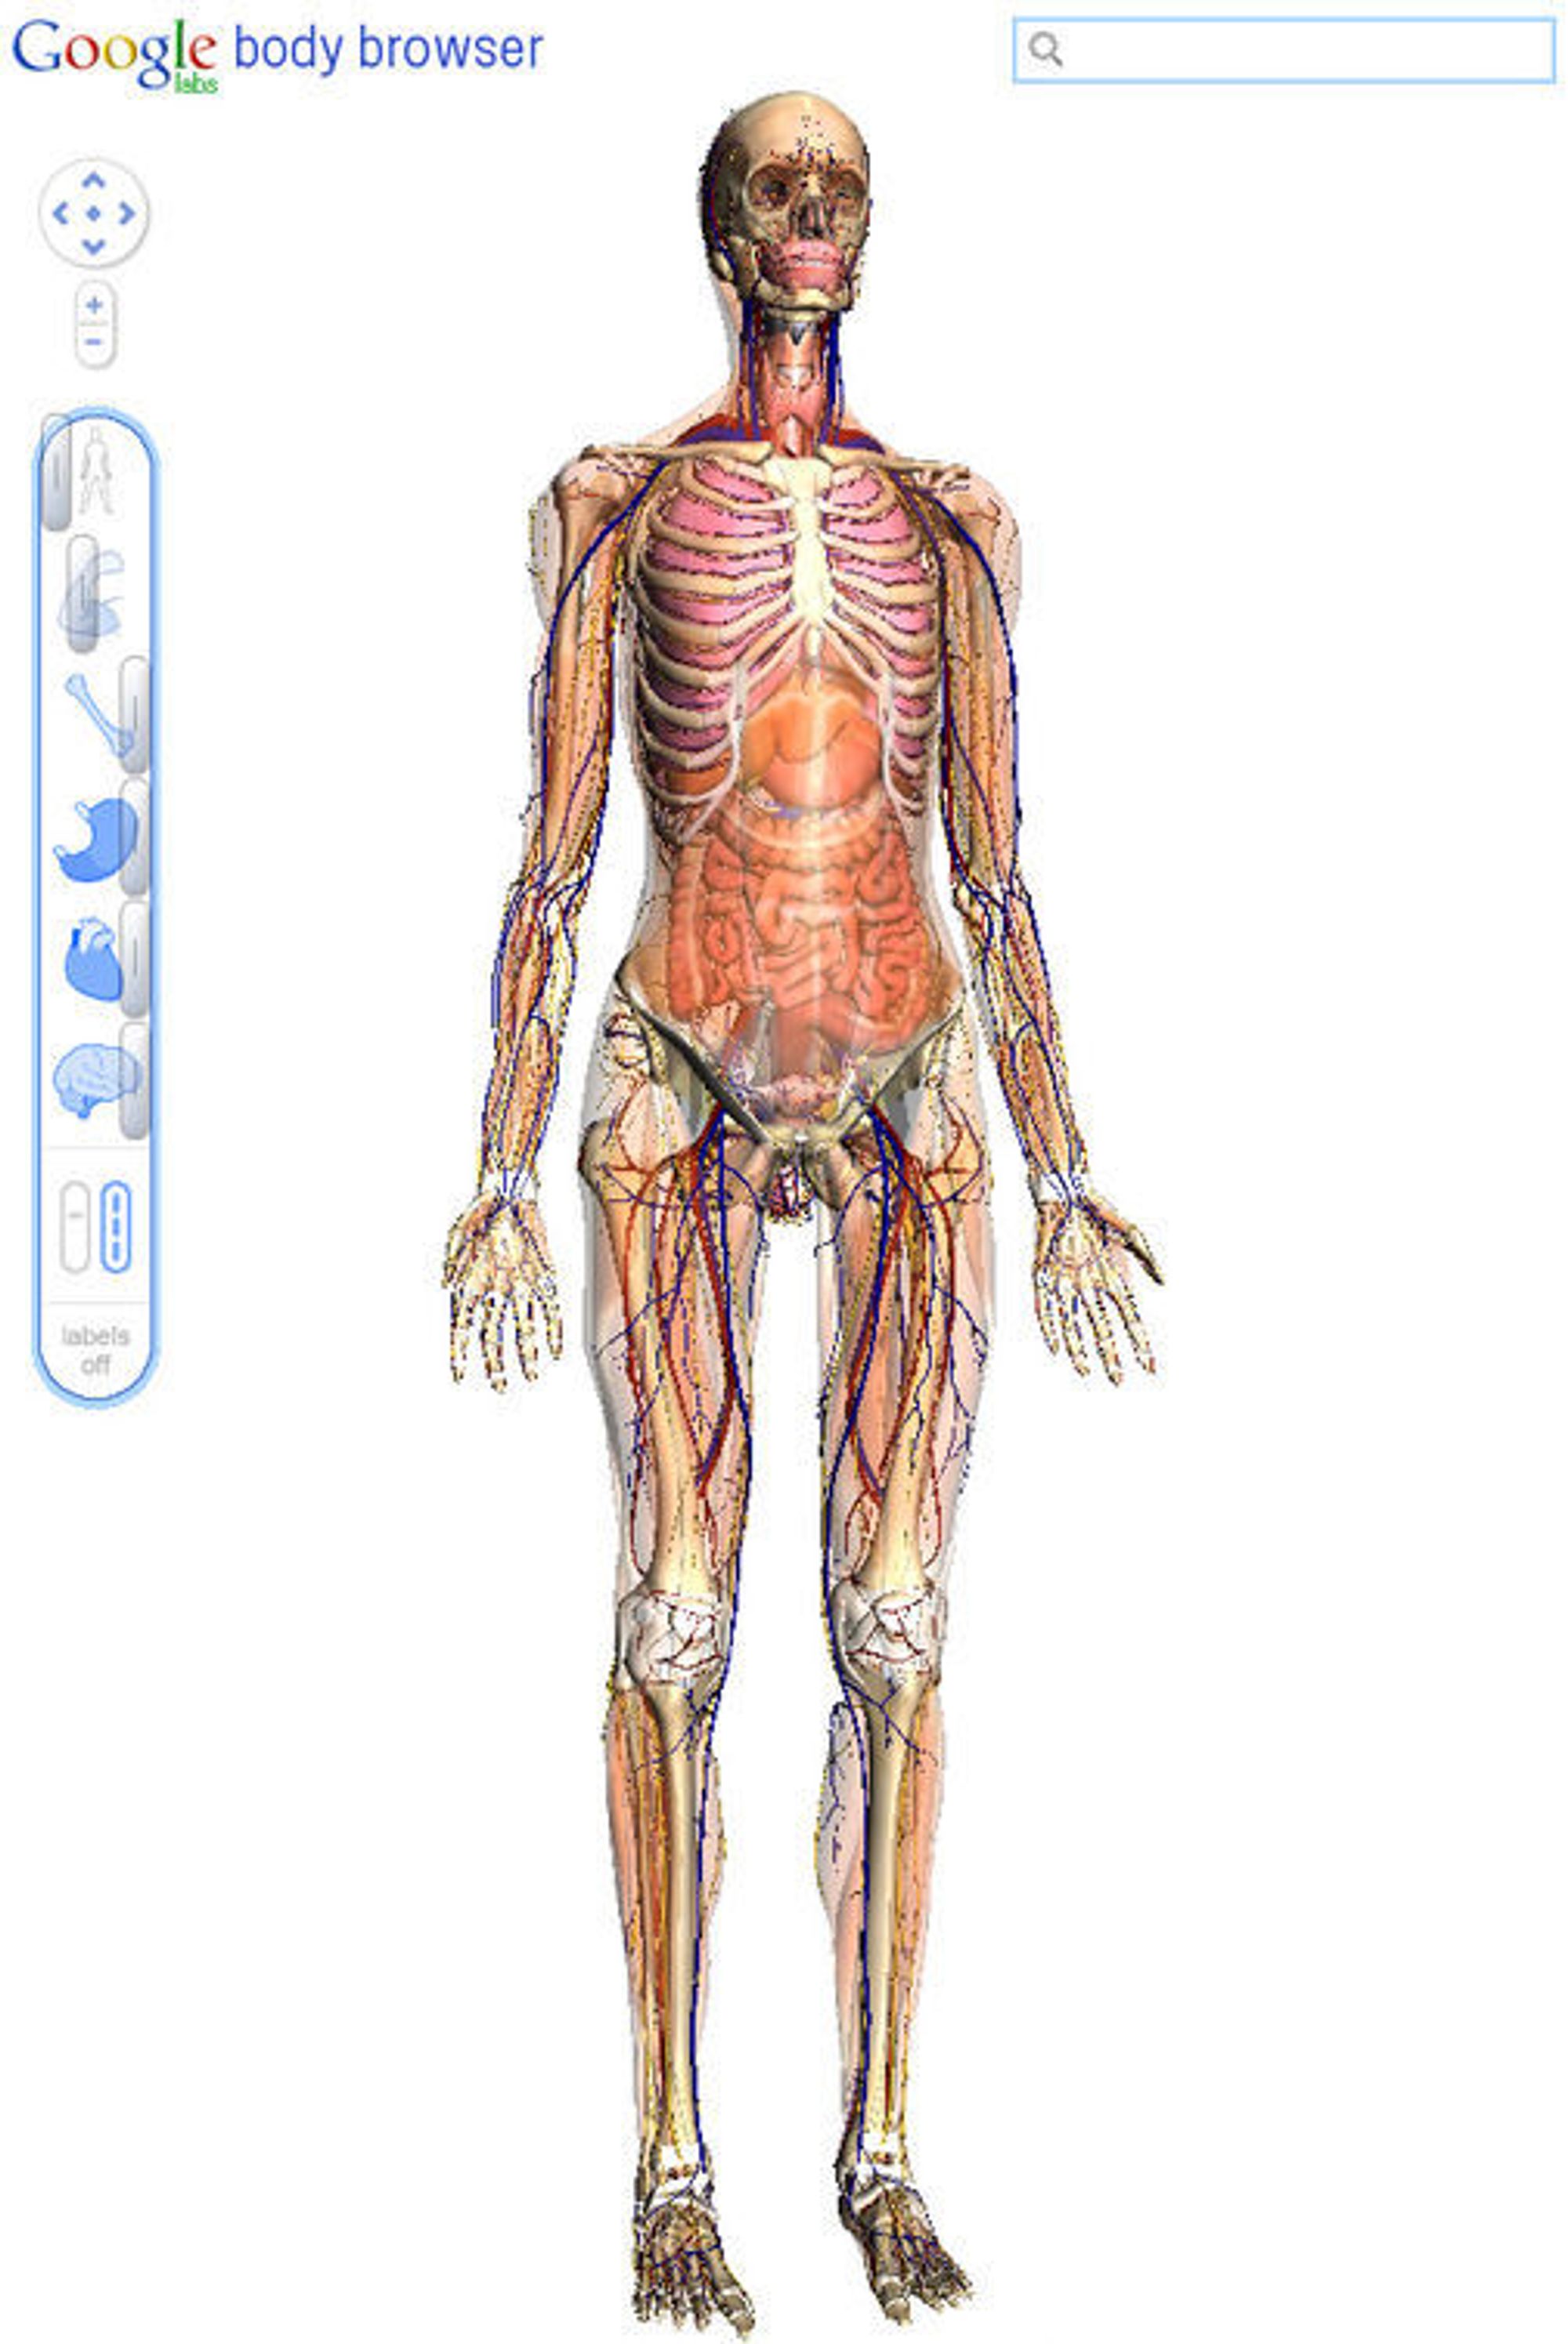 Googles Body Browser viser menneskekroppens anatomi i 3D og gjennom flere lag.